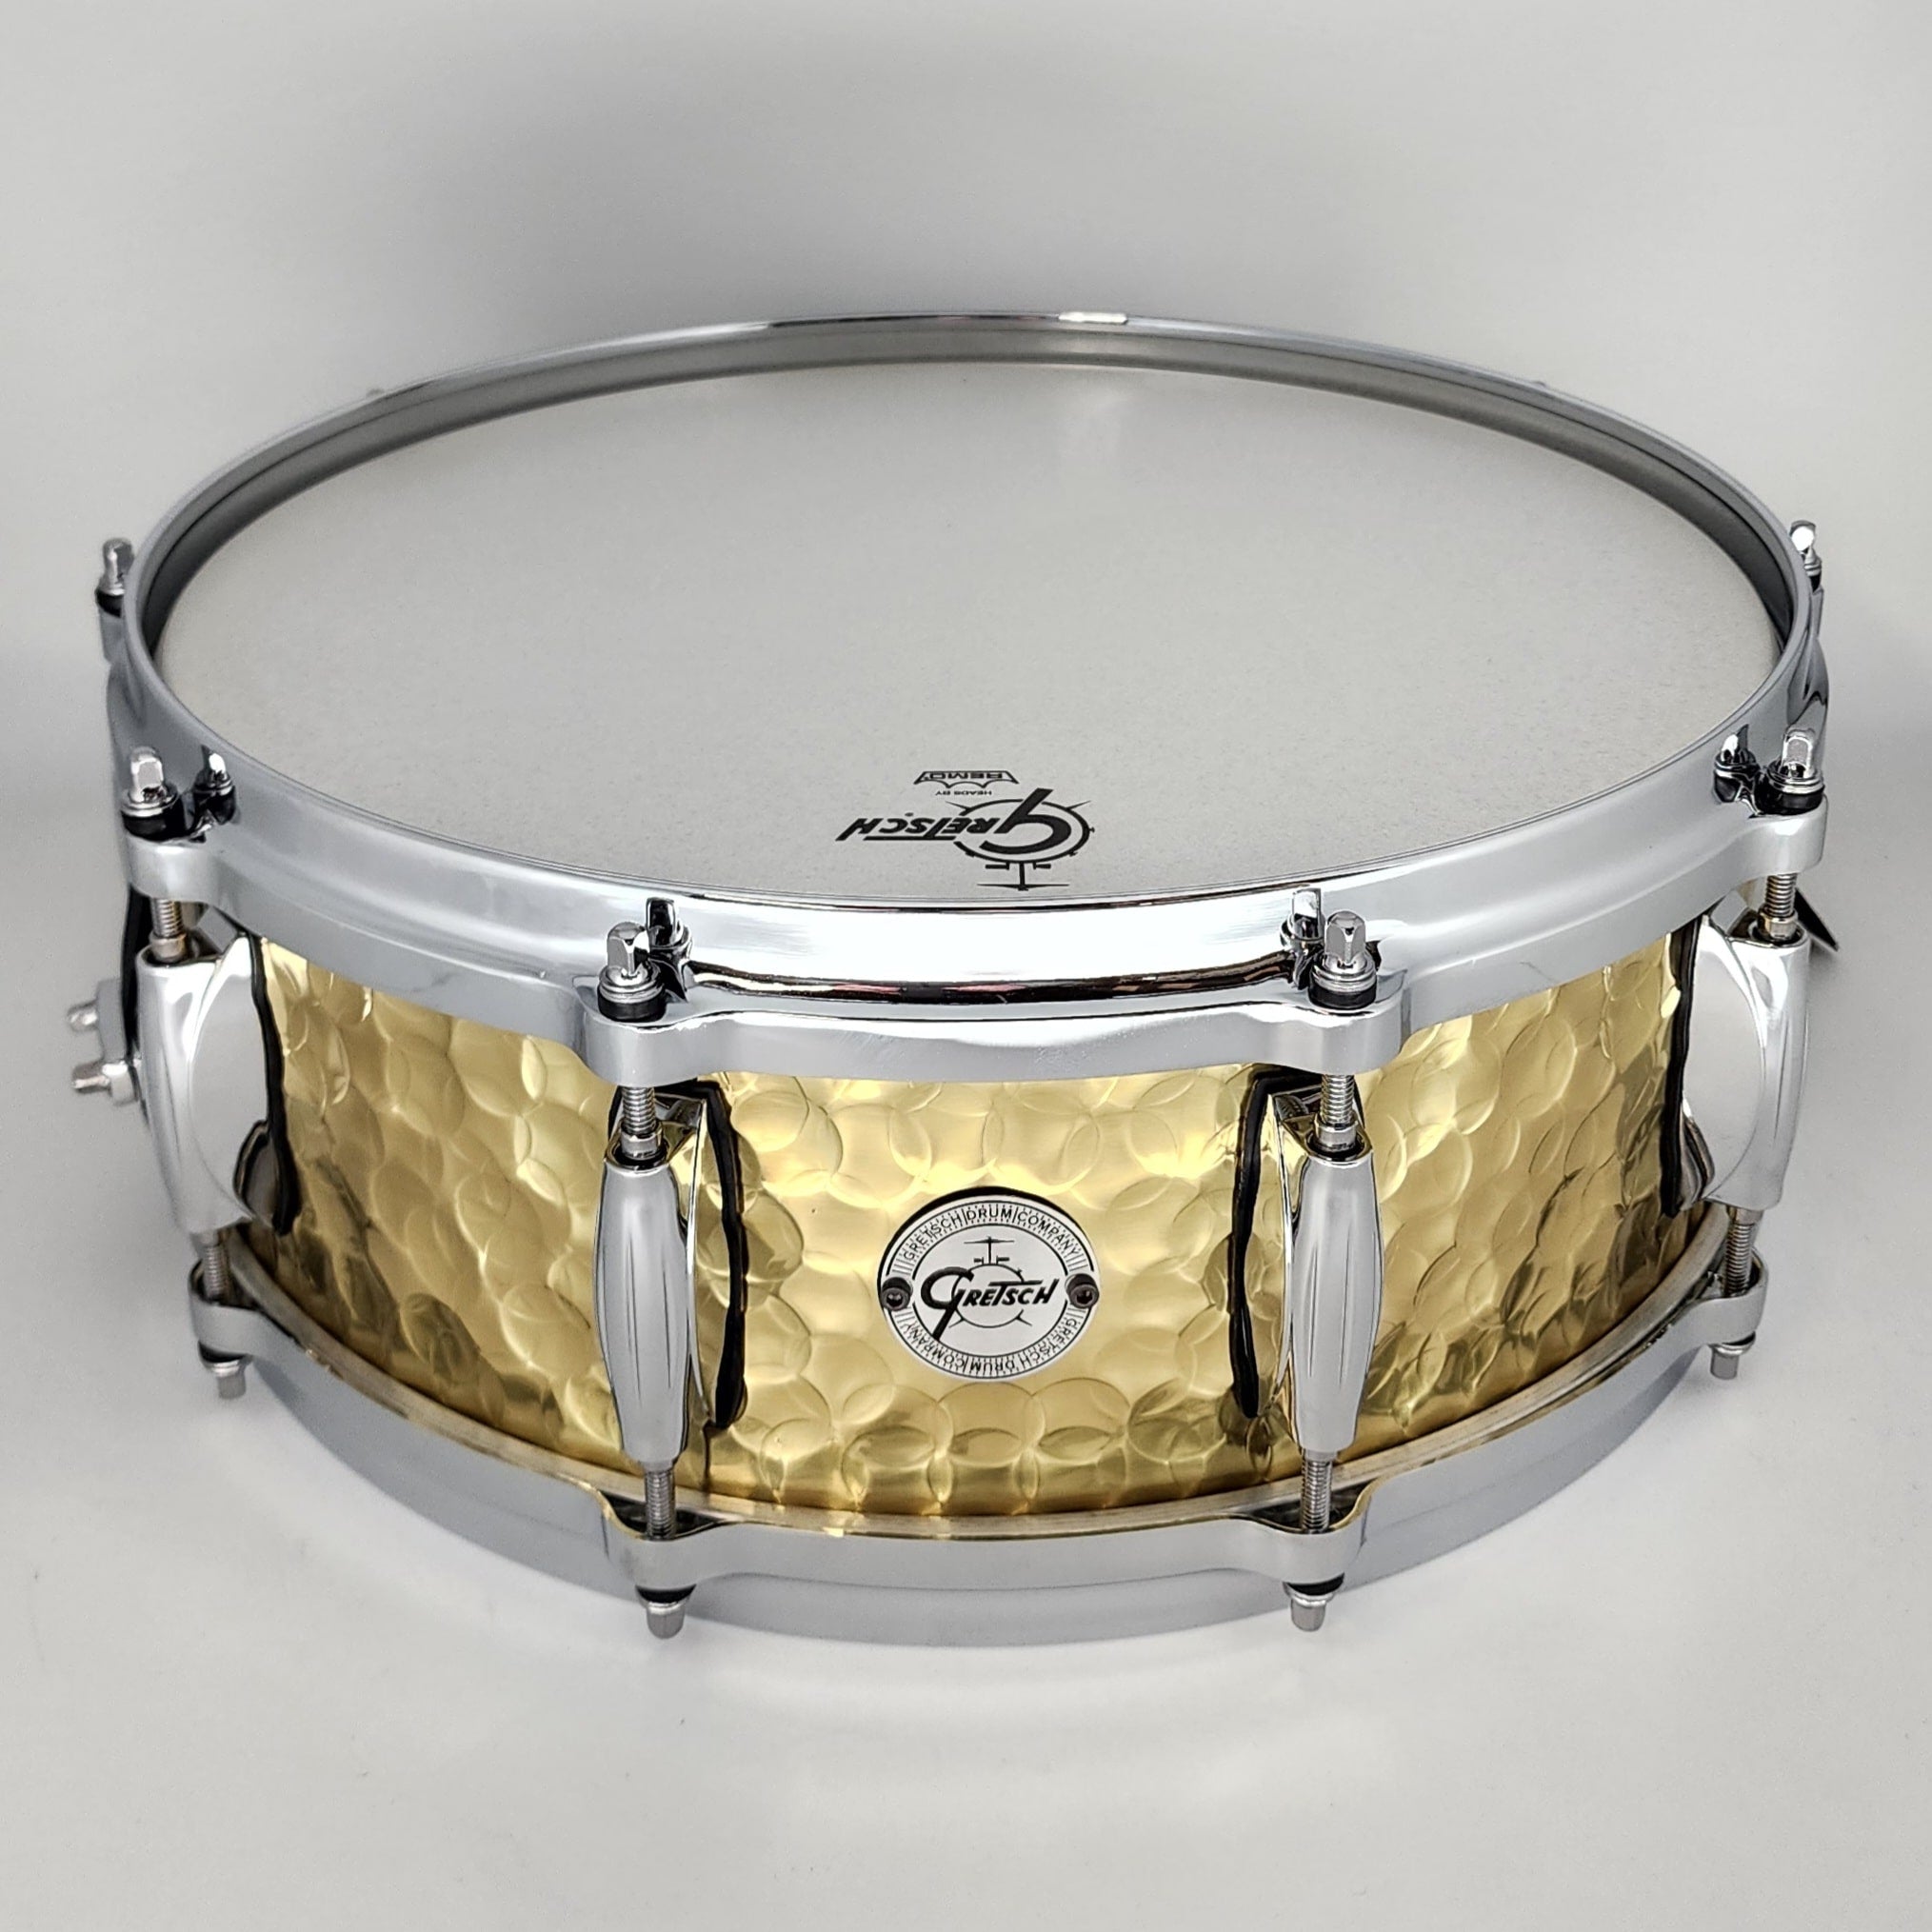 Gretsch Drums 14x5 Hammered Brass Snare